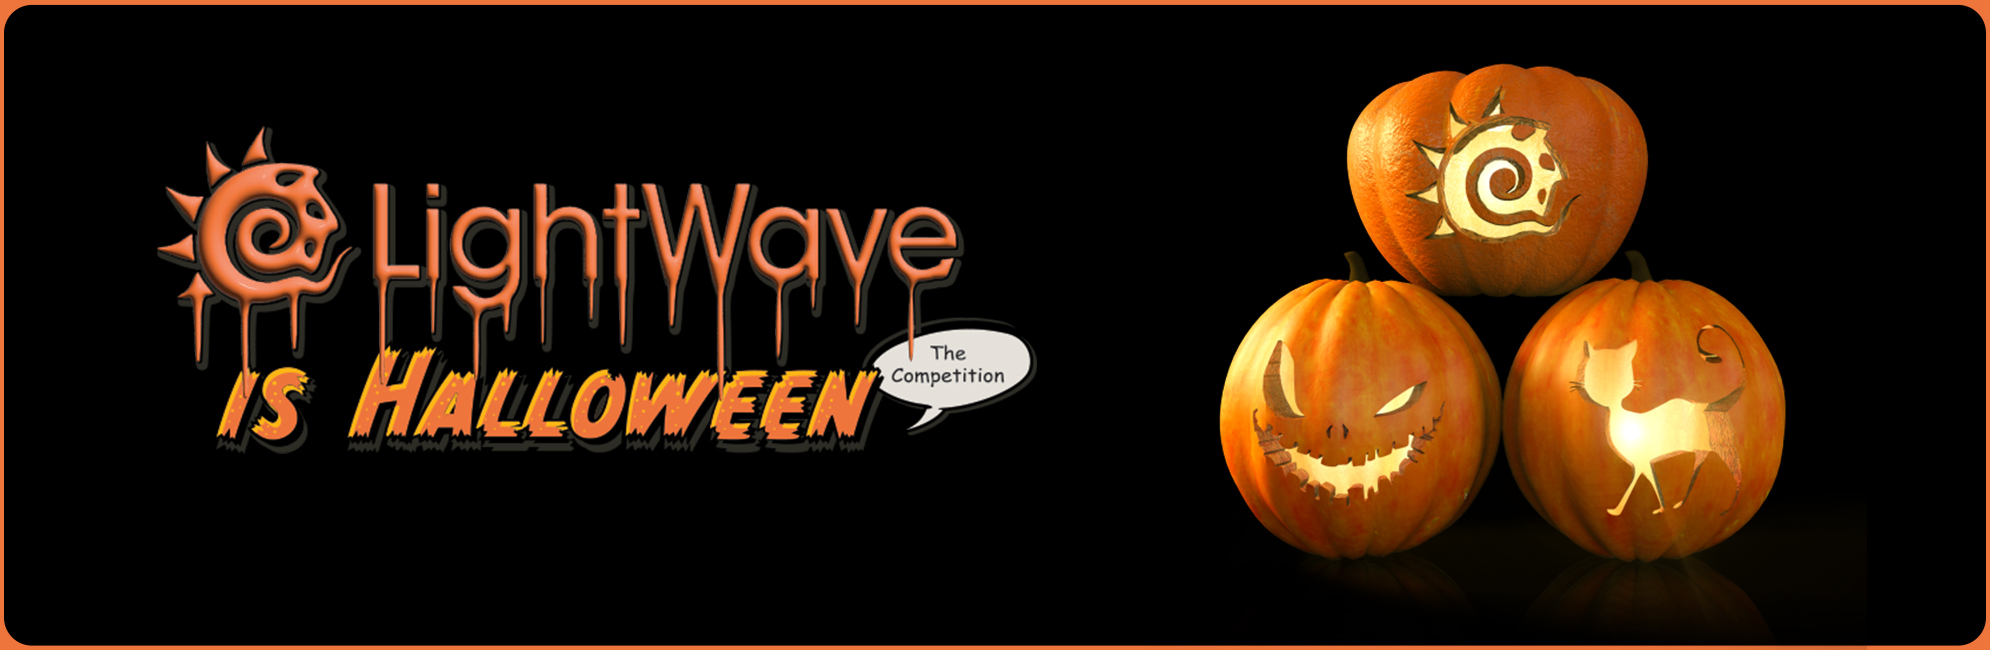 Nome: LightWave is Halloween  LightWave 3D Promo 20320918.jpg
Visite: 98
Dimensione: 387.4 KB